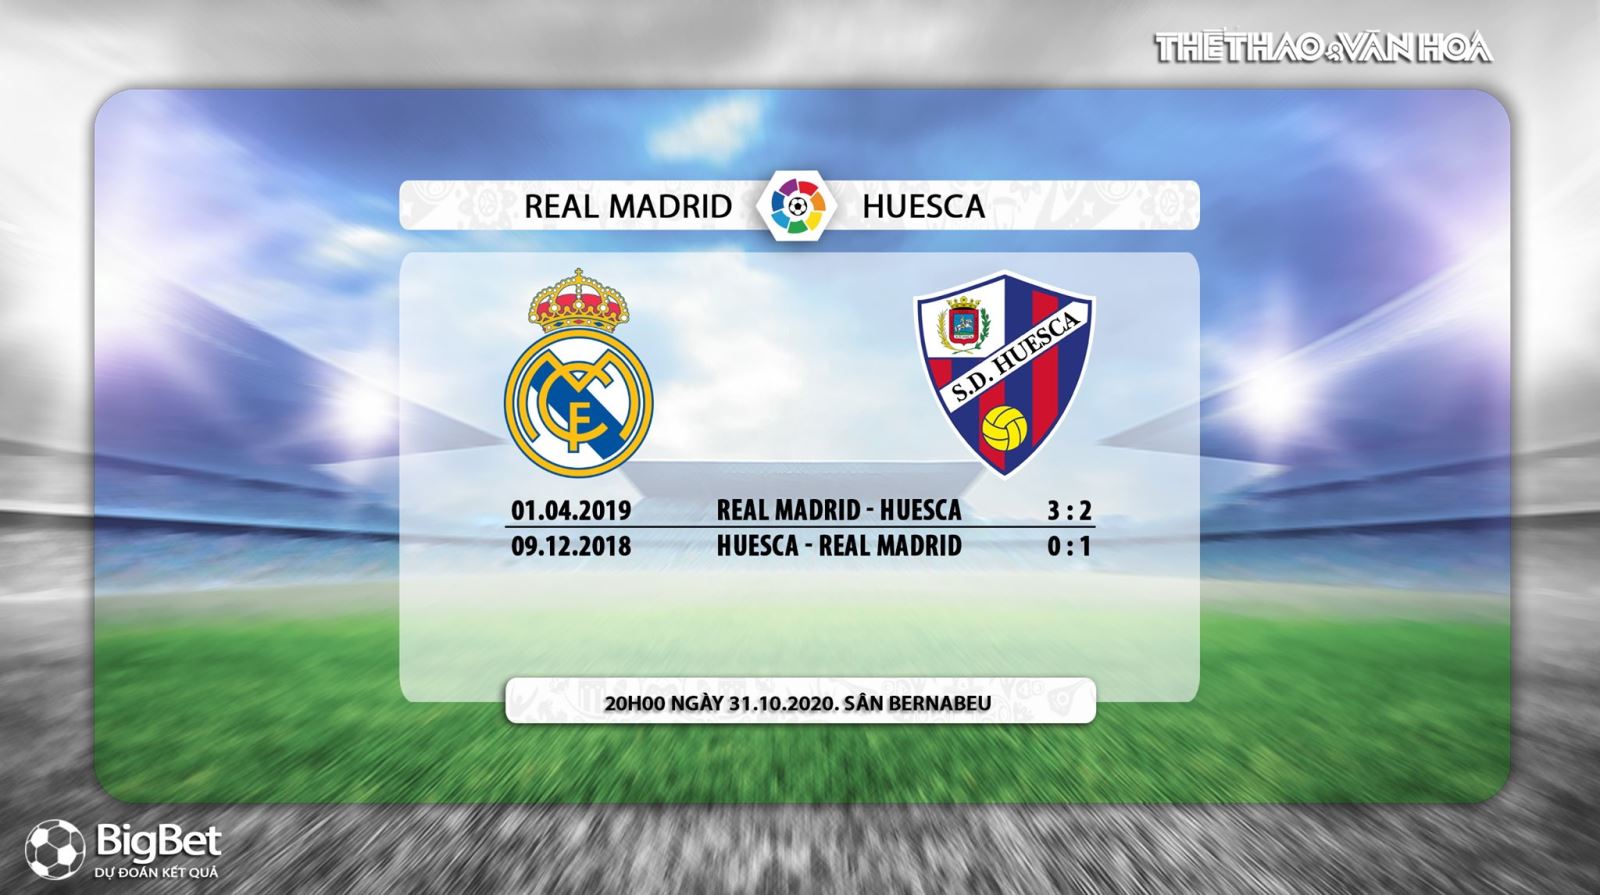 Keo nha cai, nhận định kết quả, Real Madrid vs Huesca, Vòng 8 La Liga, Trực tiếp bóng đá, BĐTV, trực tiếp bóng đá hôm nay, tin tức bóng đá, nhận định bóng đá Real Madrid đấu với Huesca